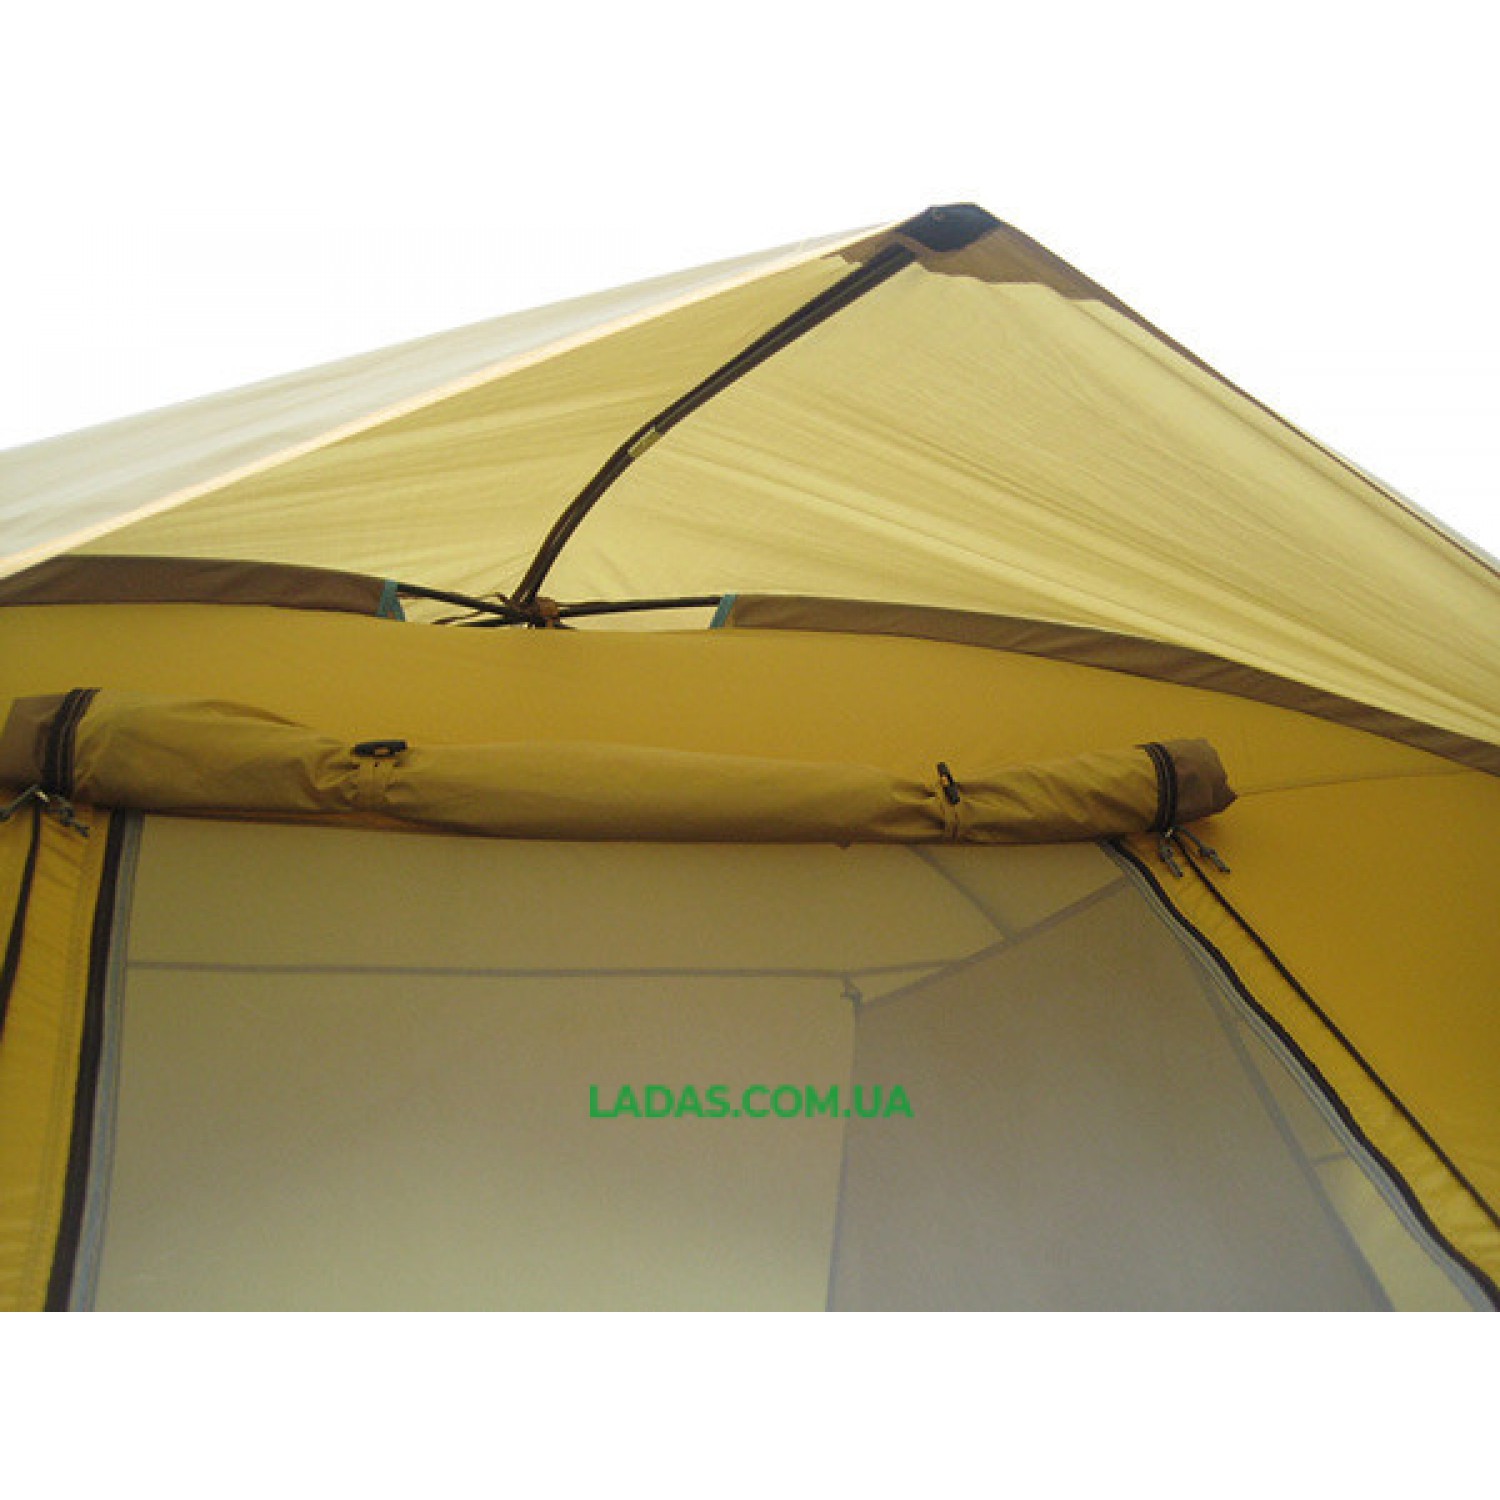 Палатка четырехместная Green Camp 1100 коричневая